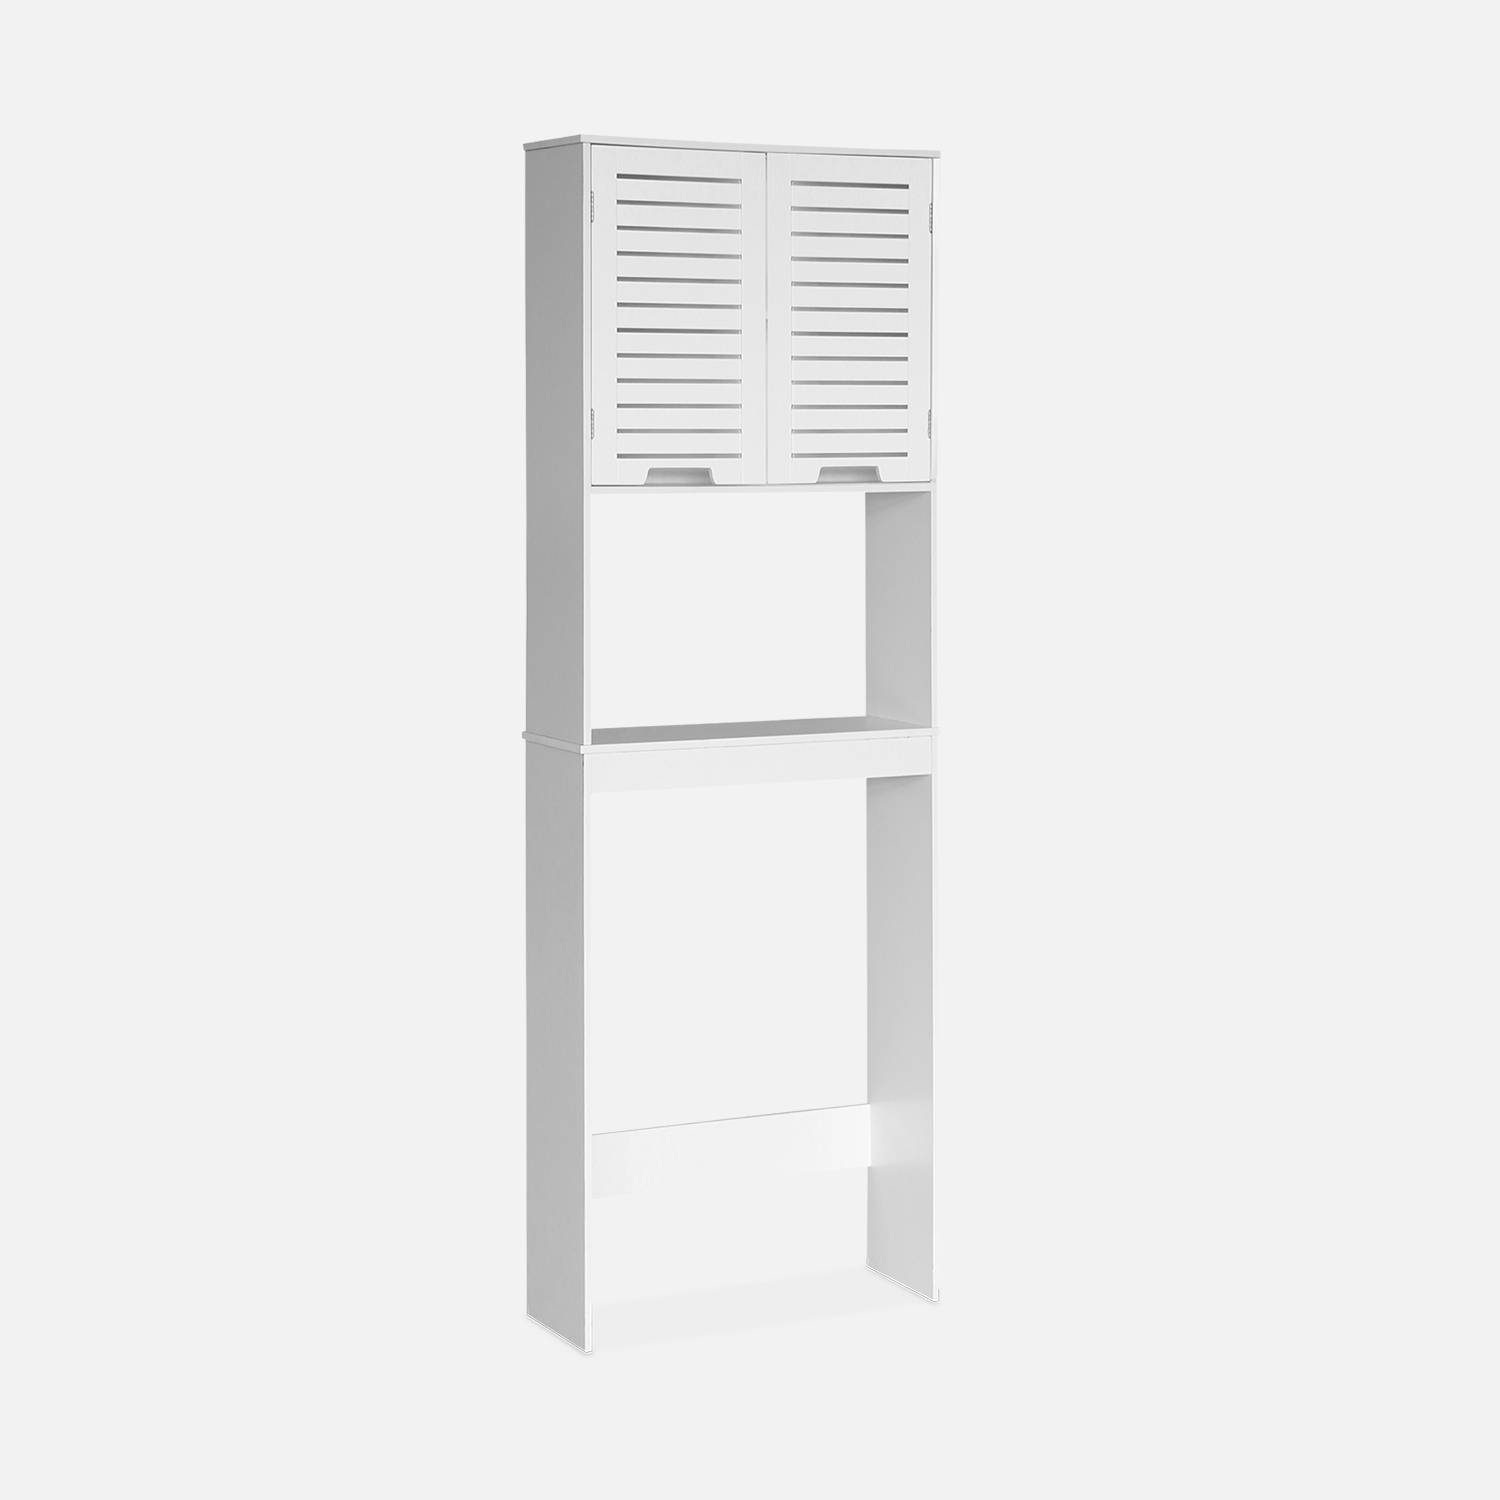 WC shelf/cabinet, bathroom furniture, white,sweeek,Photo1